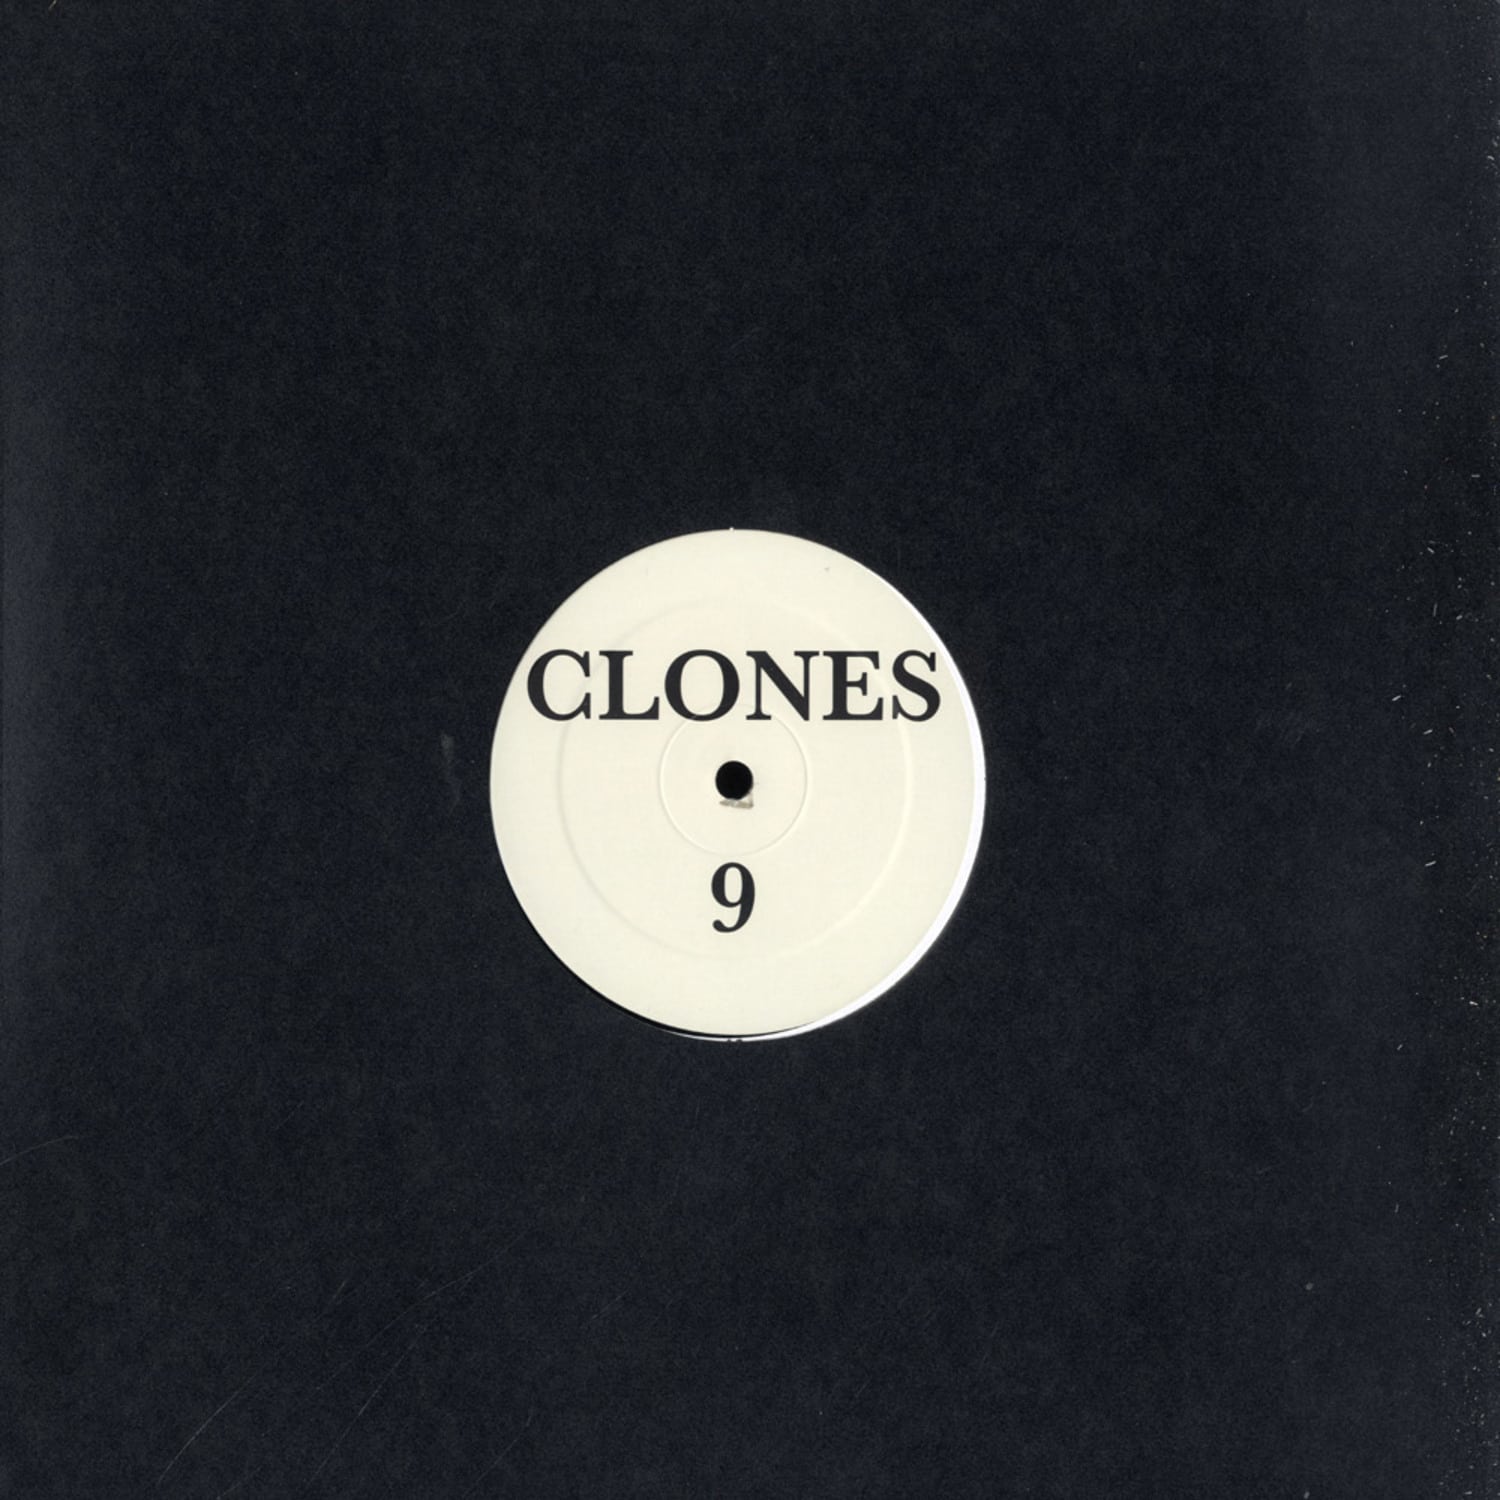 Clones - CLONES 9